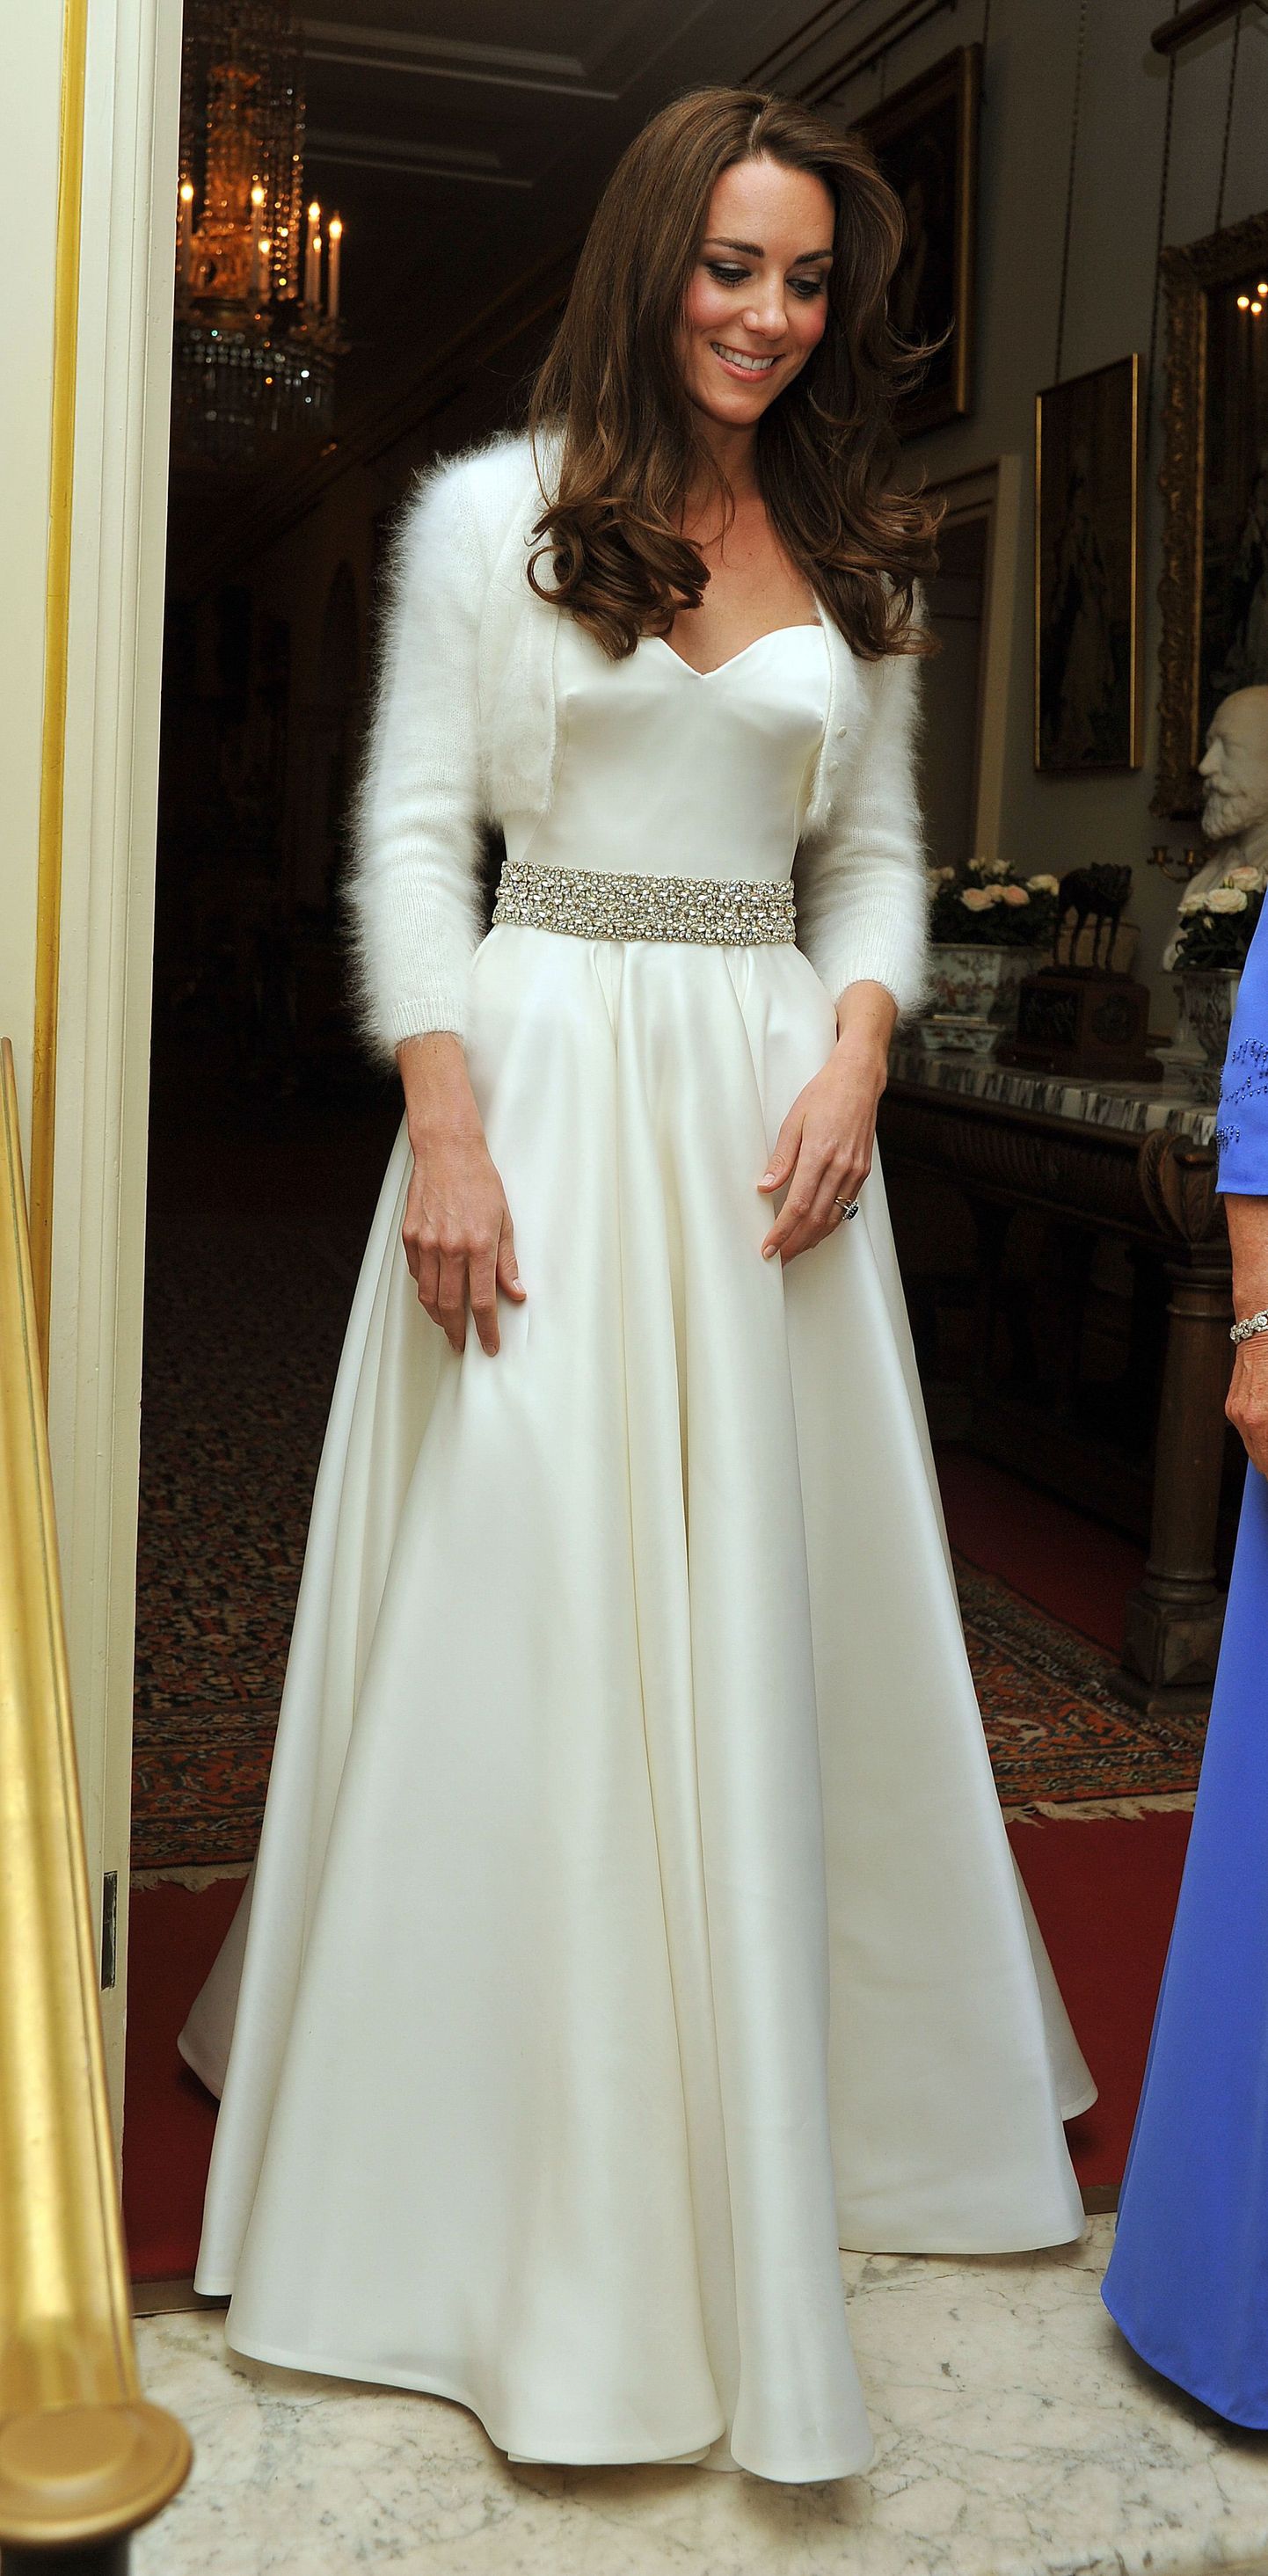 Cambridge'i hertsoginna Catherine (Kate Middleton)